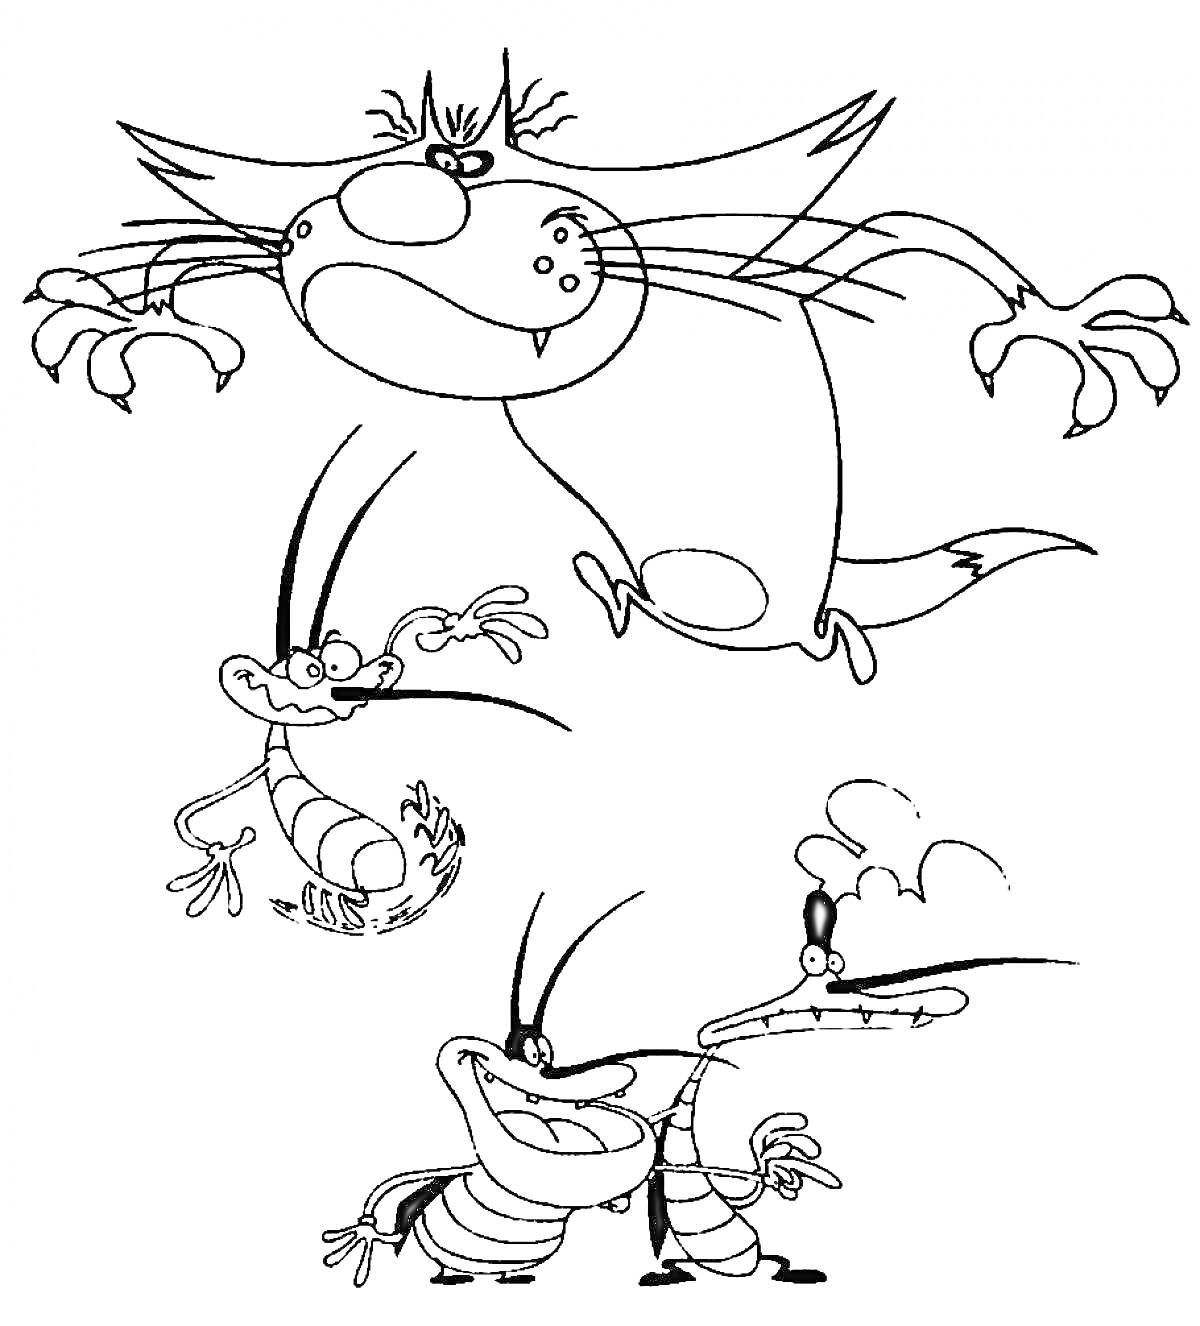 Раскраска Огги и тараканы с тремя тараканами: Огги в прыжке, улыбающийся Марки с поднятыми руками, Диди с поднятыми руками и задумчивый Джои